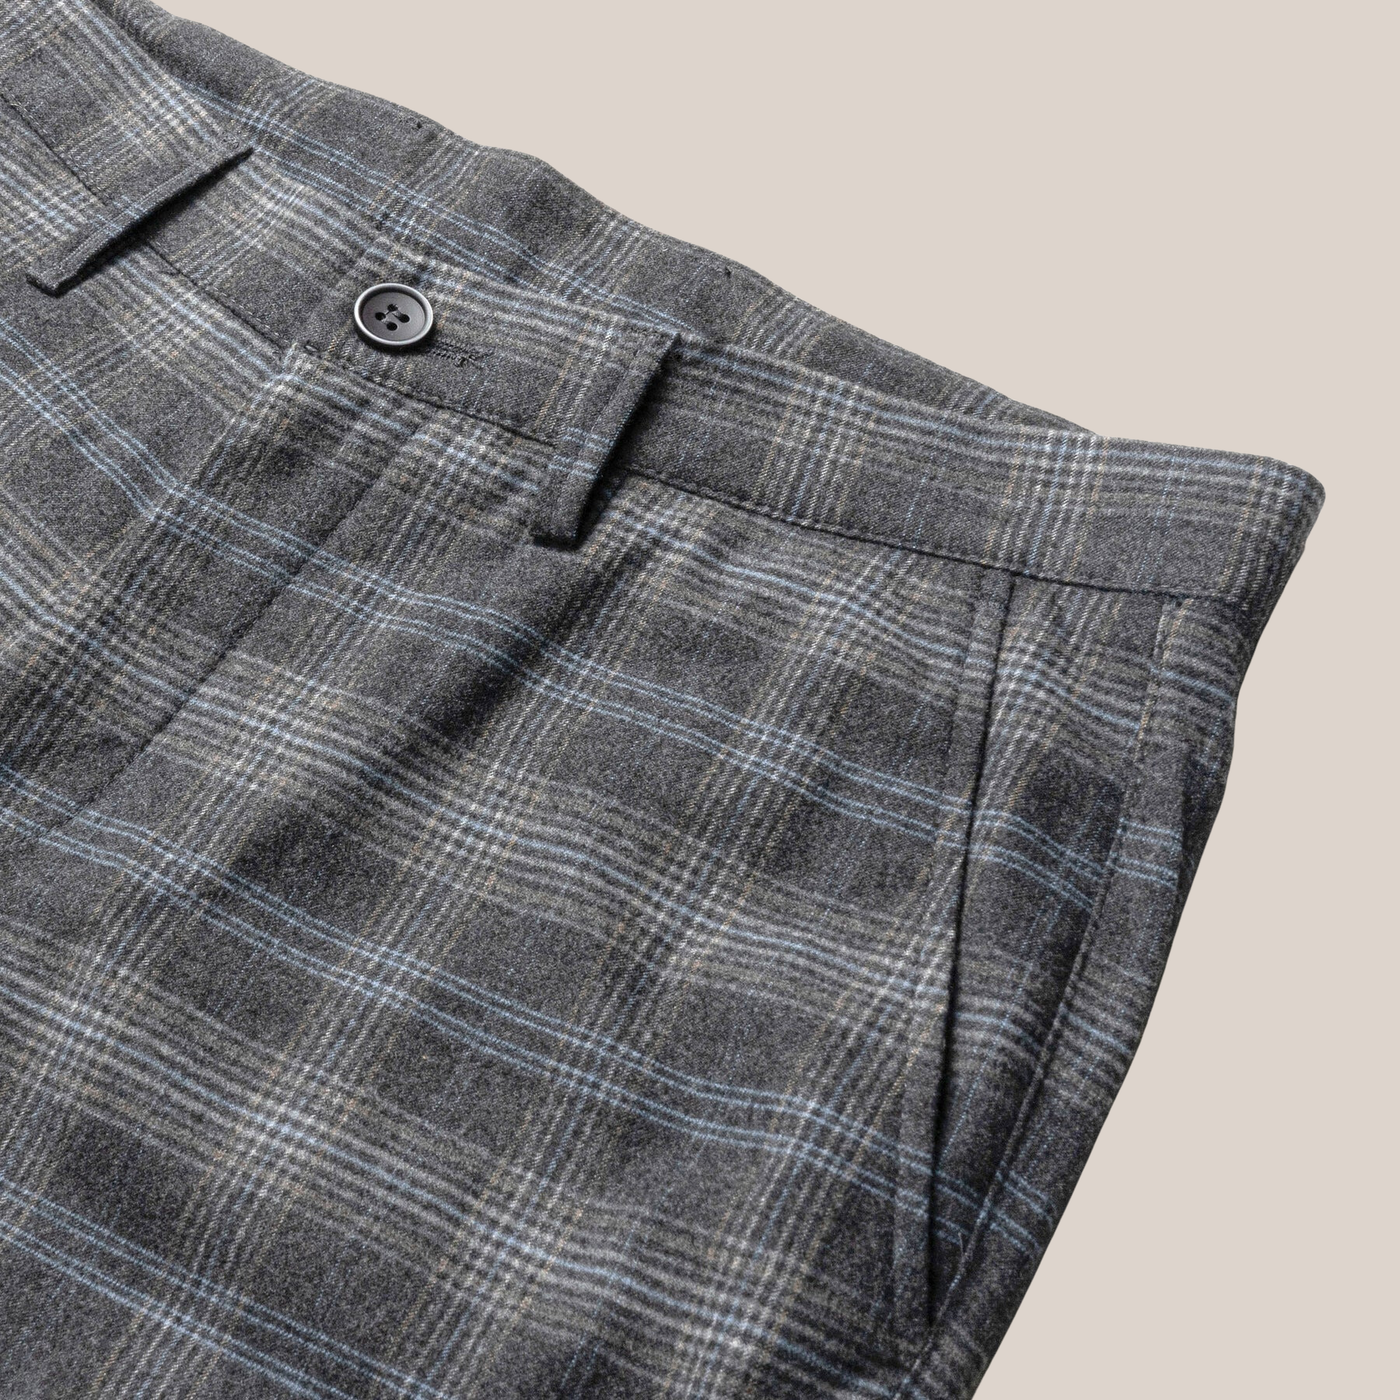 Gotstyle Fashion - Robert Barakett Pants Plaid Check Jersey Chino - Charcoal